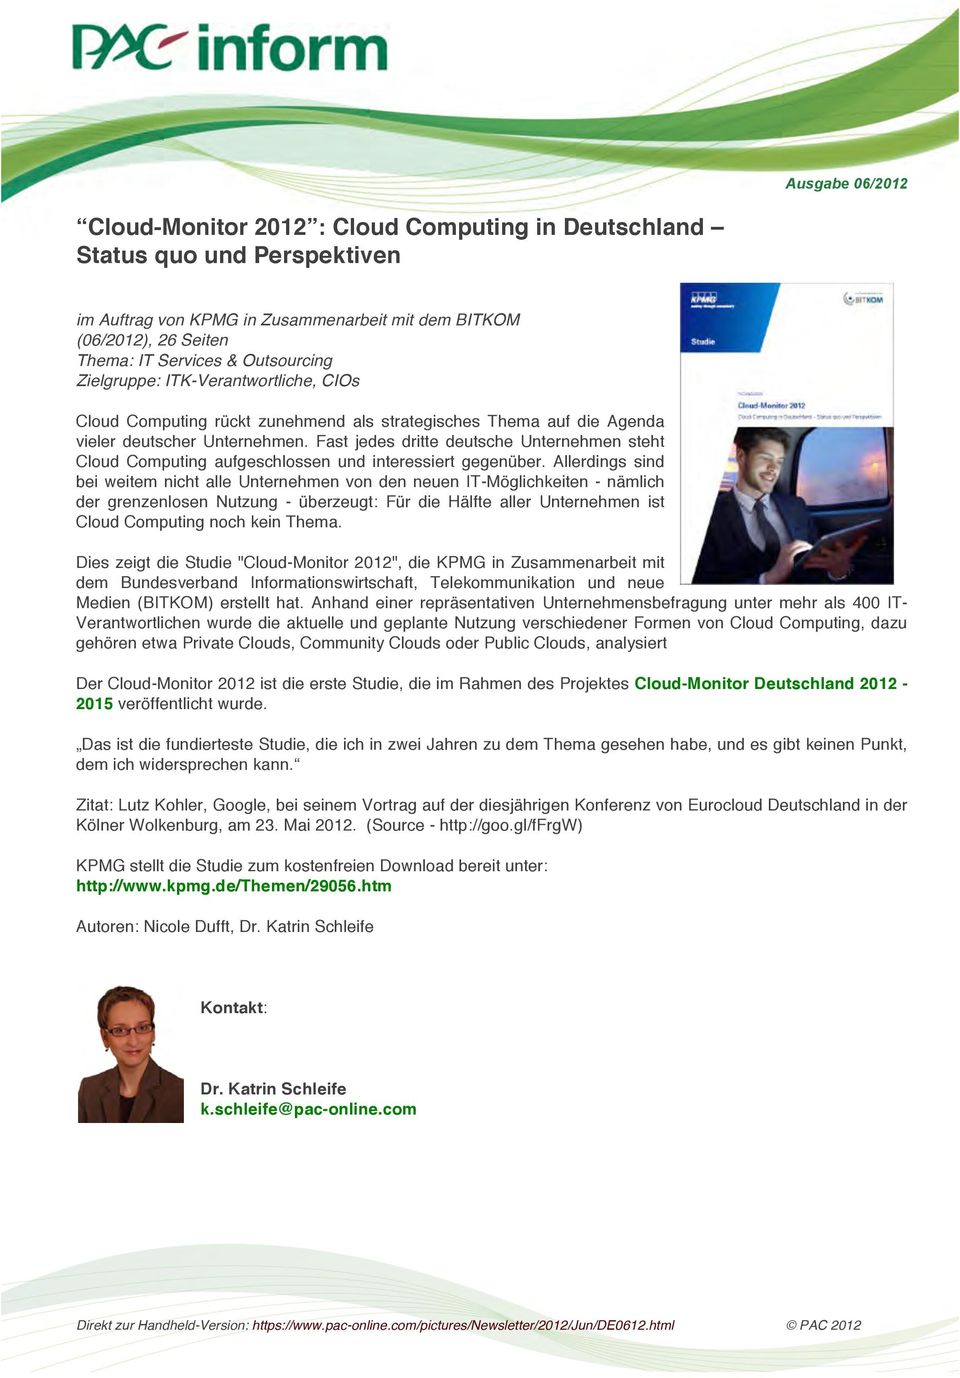 Fast jedes dritte deutsche Unternehmen steht Cloud Computing aufgeschlossen und interessiert gegenüber.